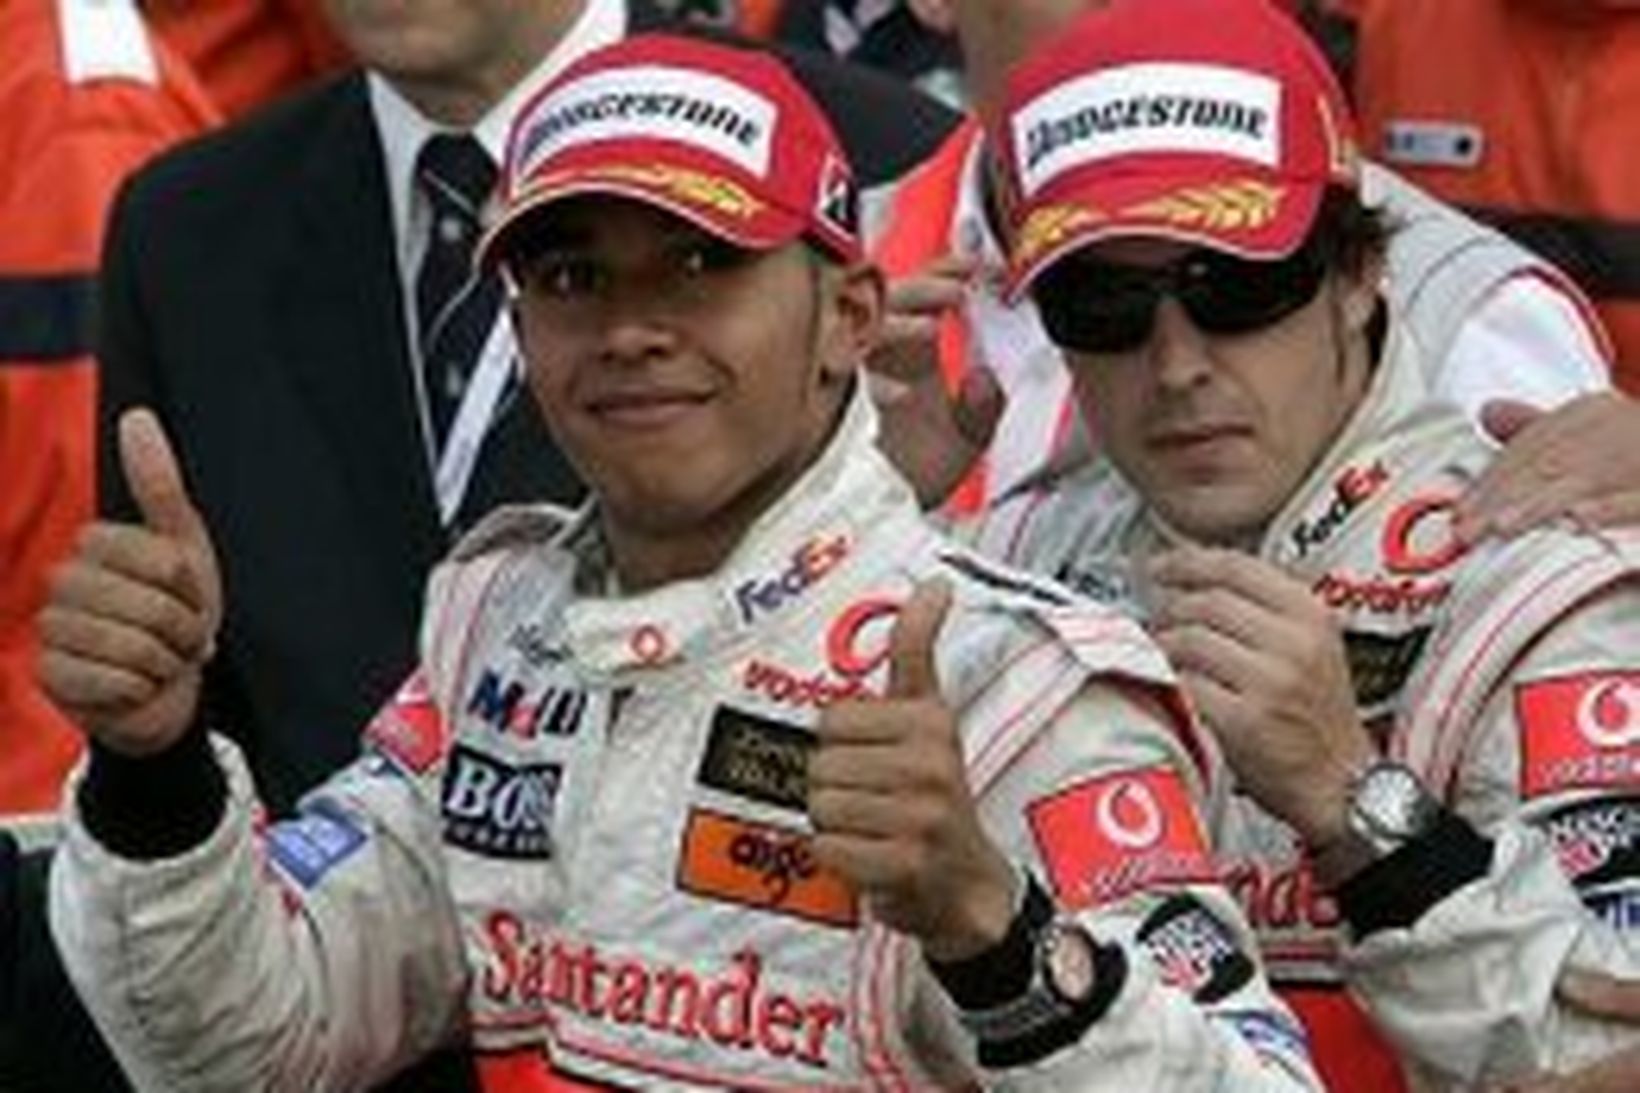 Fernando Alonso og Lewis Hamilton fagna árangrinum í Mónakó.